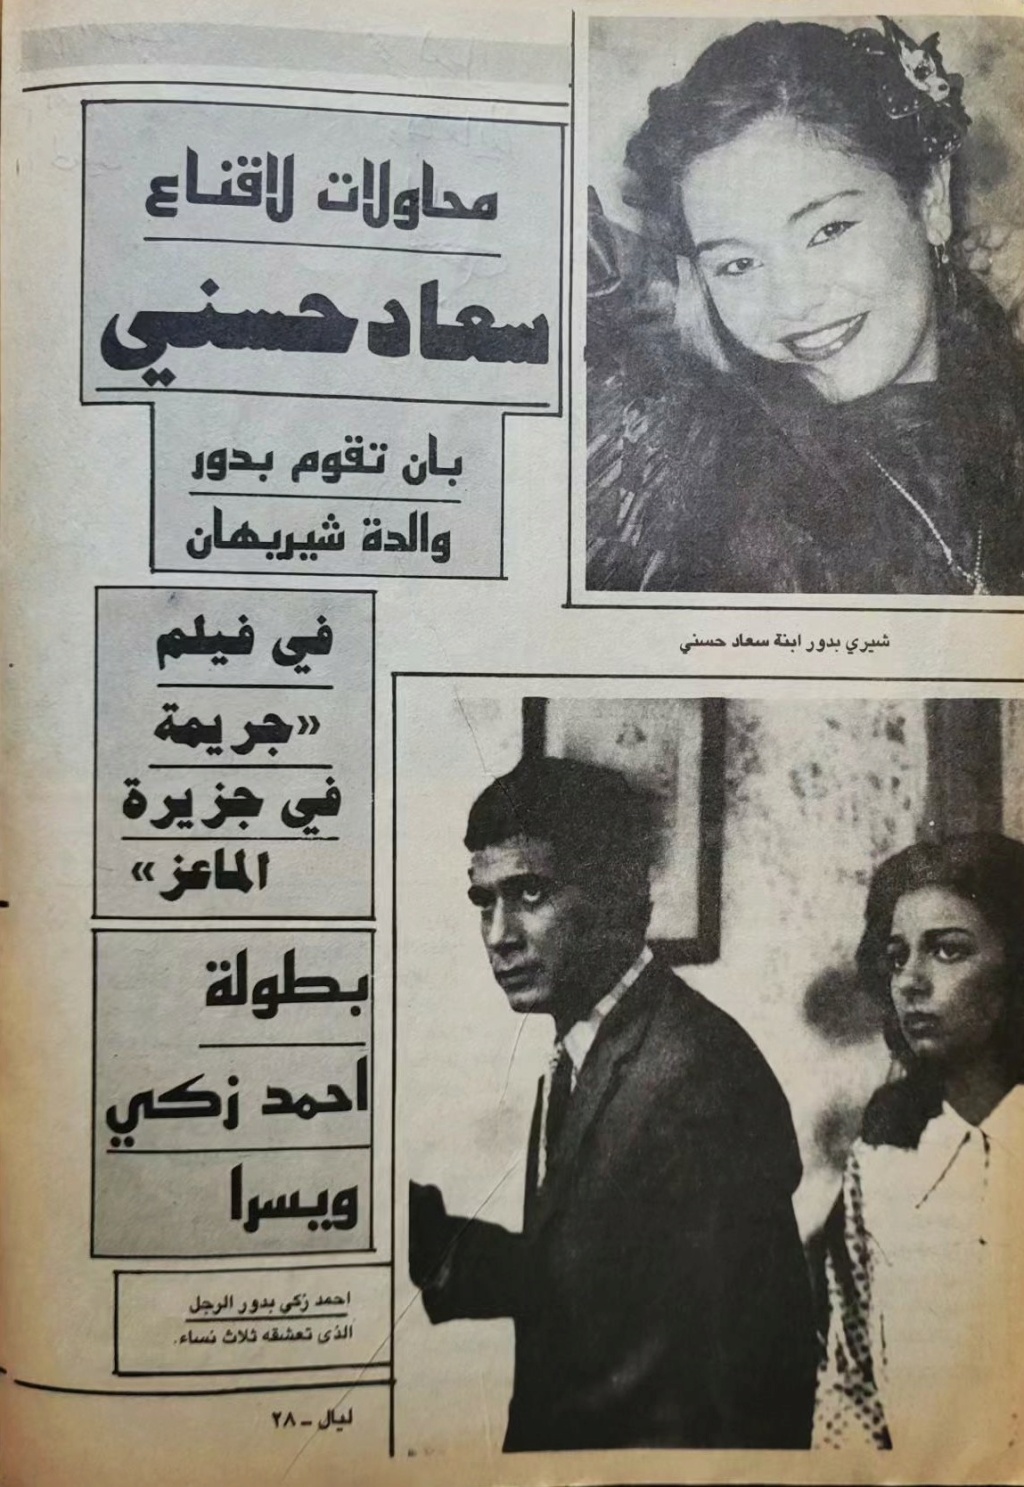 سعاد - مقال صحفي : محاولات لاقناع سعاد حسني بان تقوم بدور والدة شيريهان 1987 م 1469